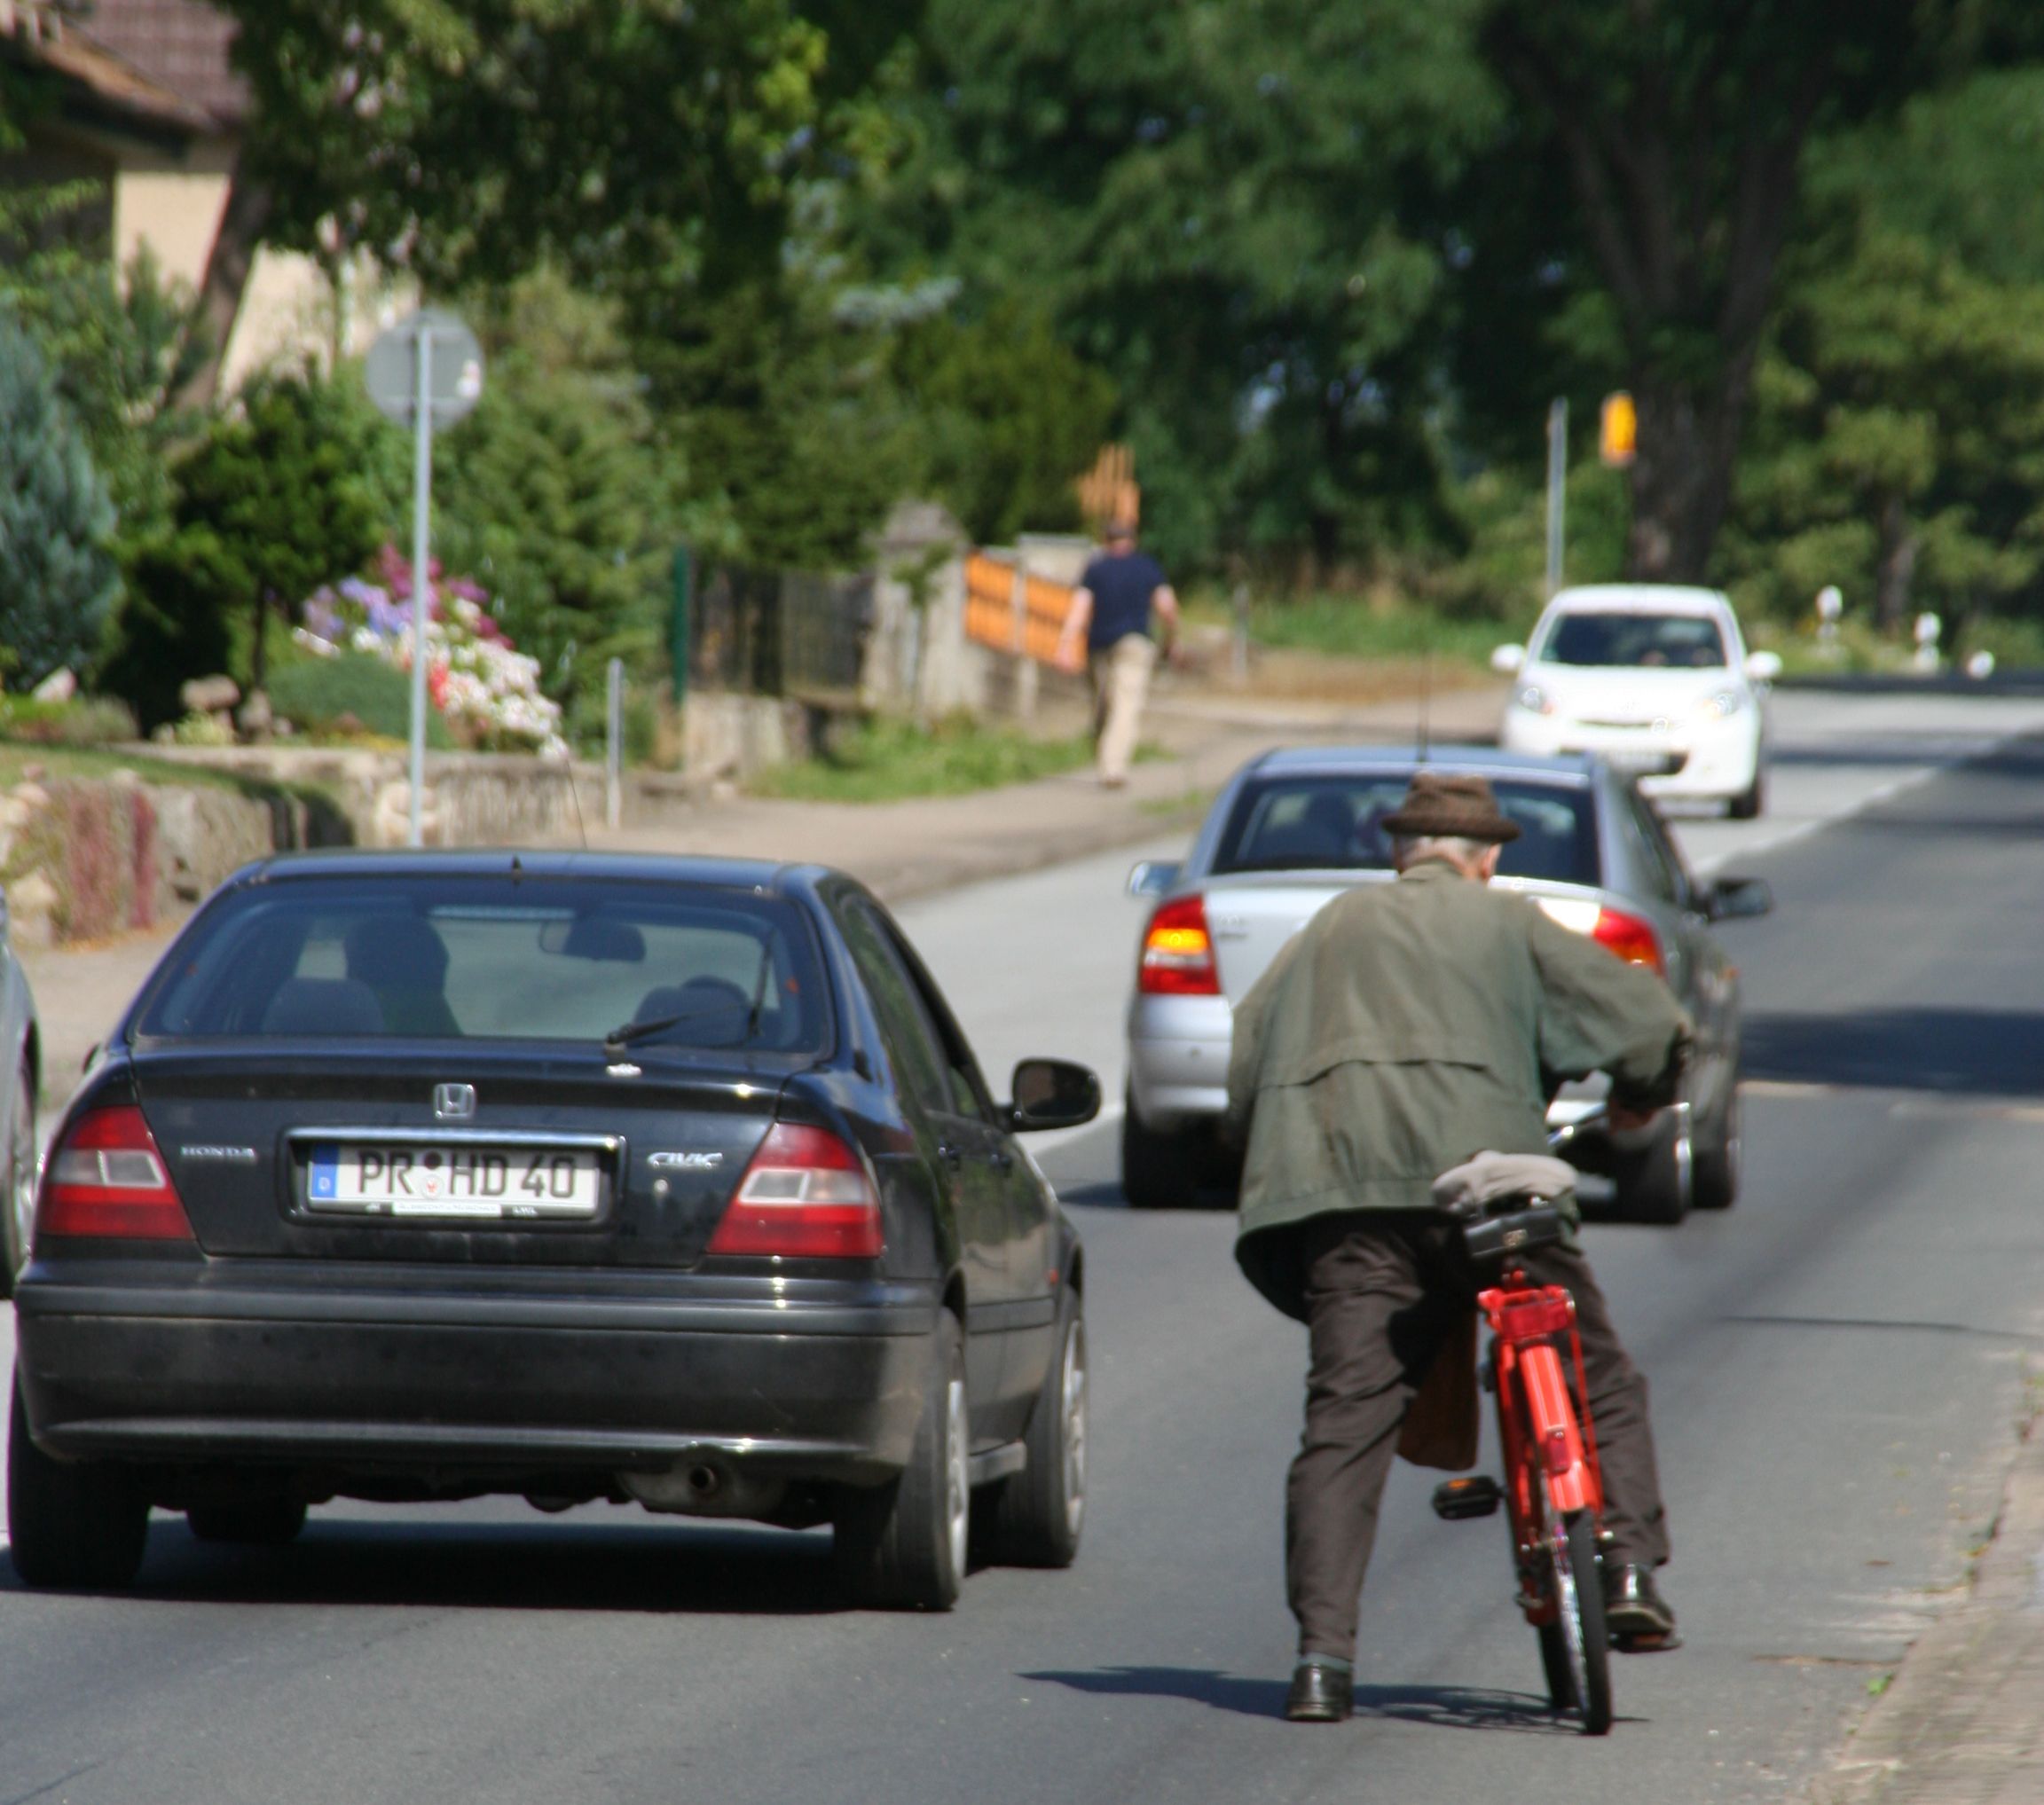 Mobilität älterer Menschen in Mecklenburg-Vorpommern